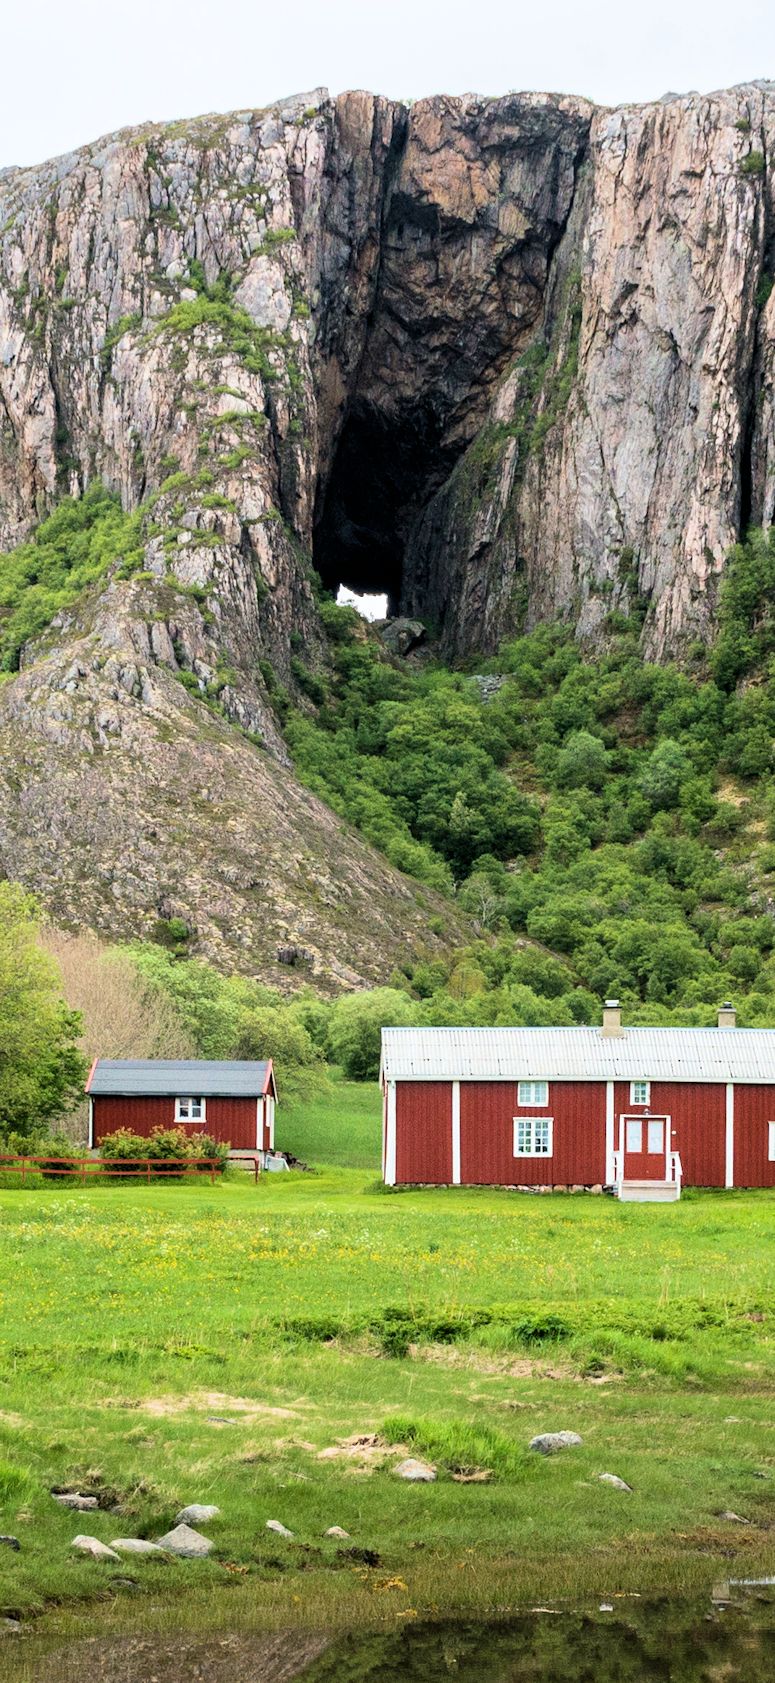 Torghatten i Norge - berget med hl i.